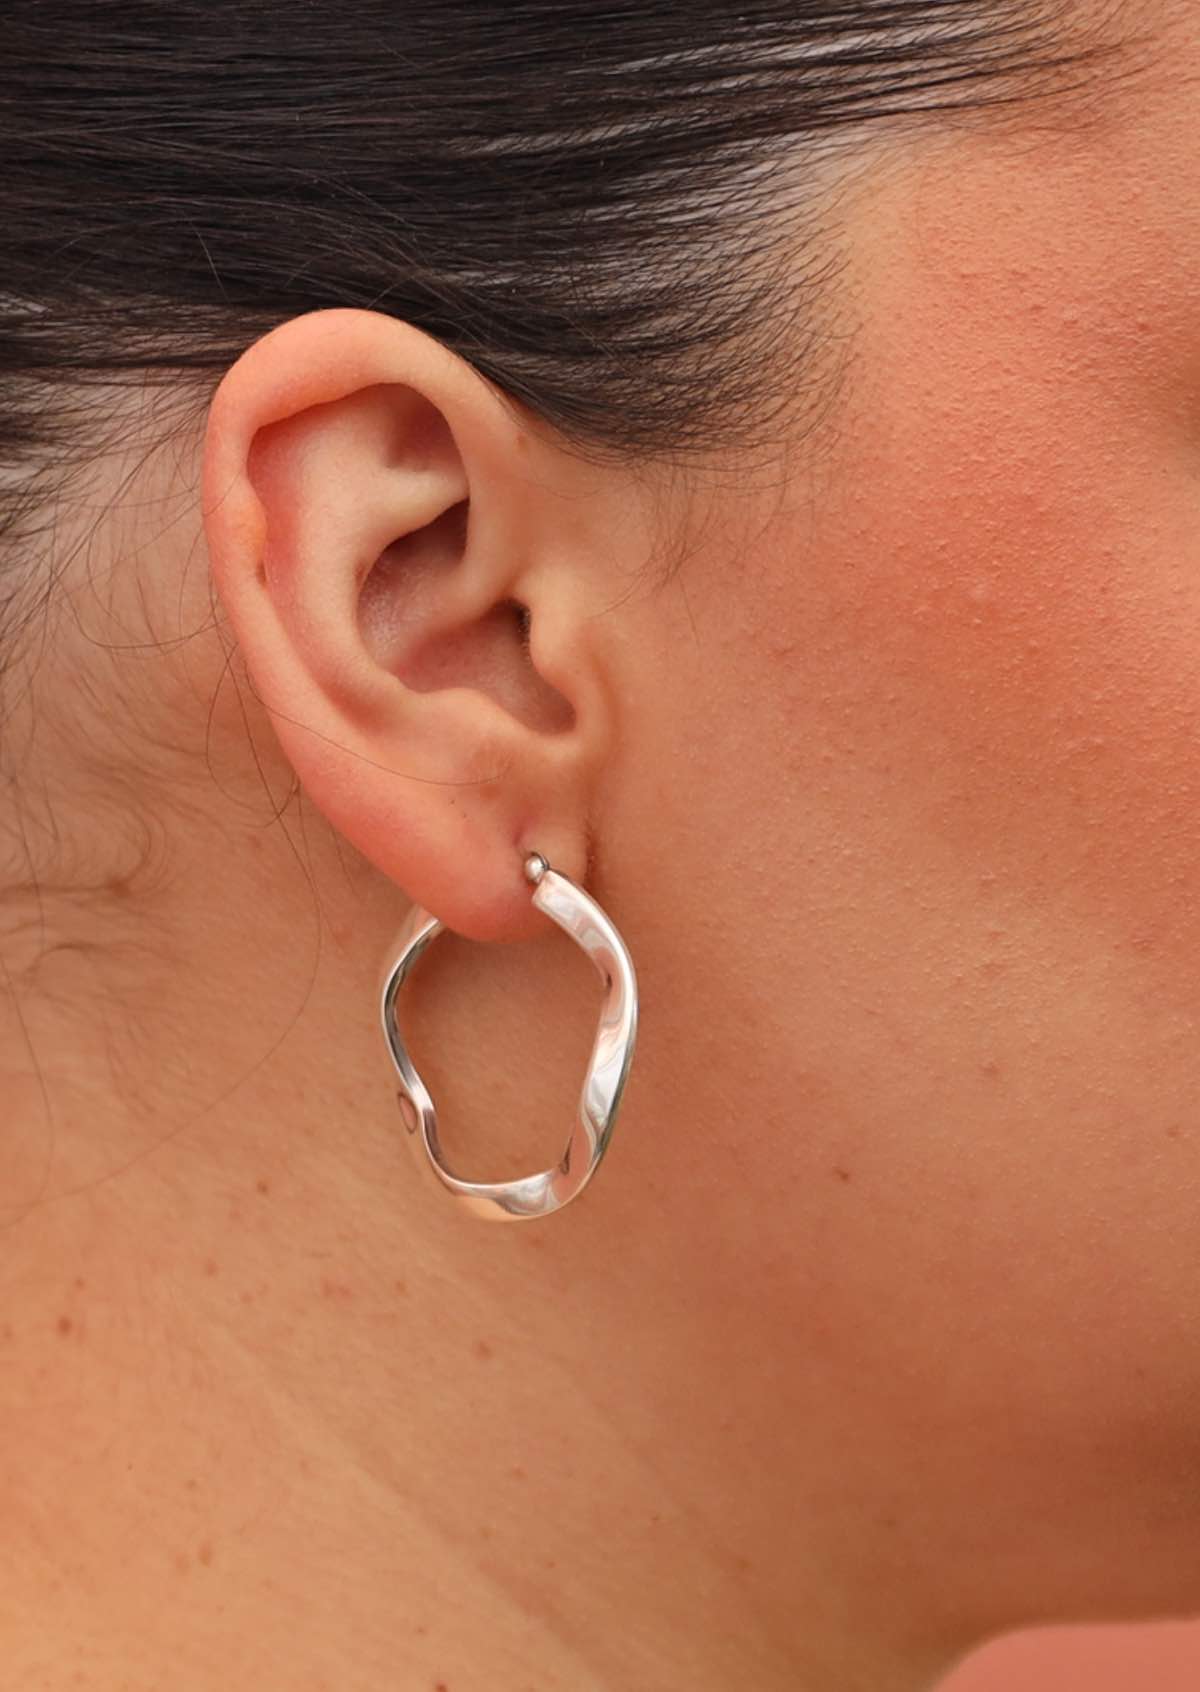 Waving sterling silver hoop earrings on woman's ear